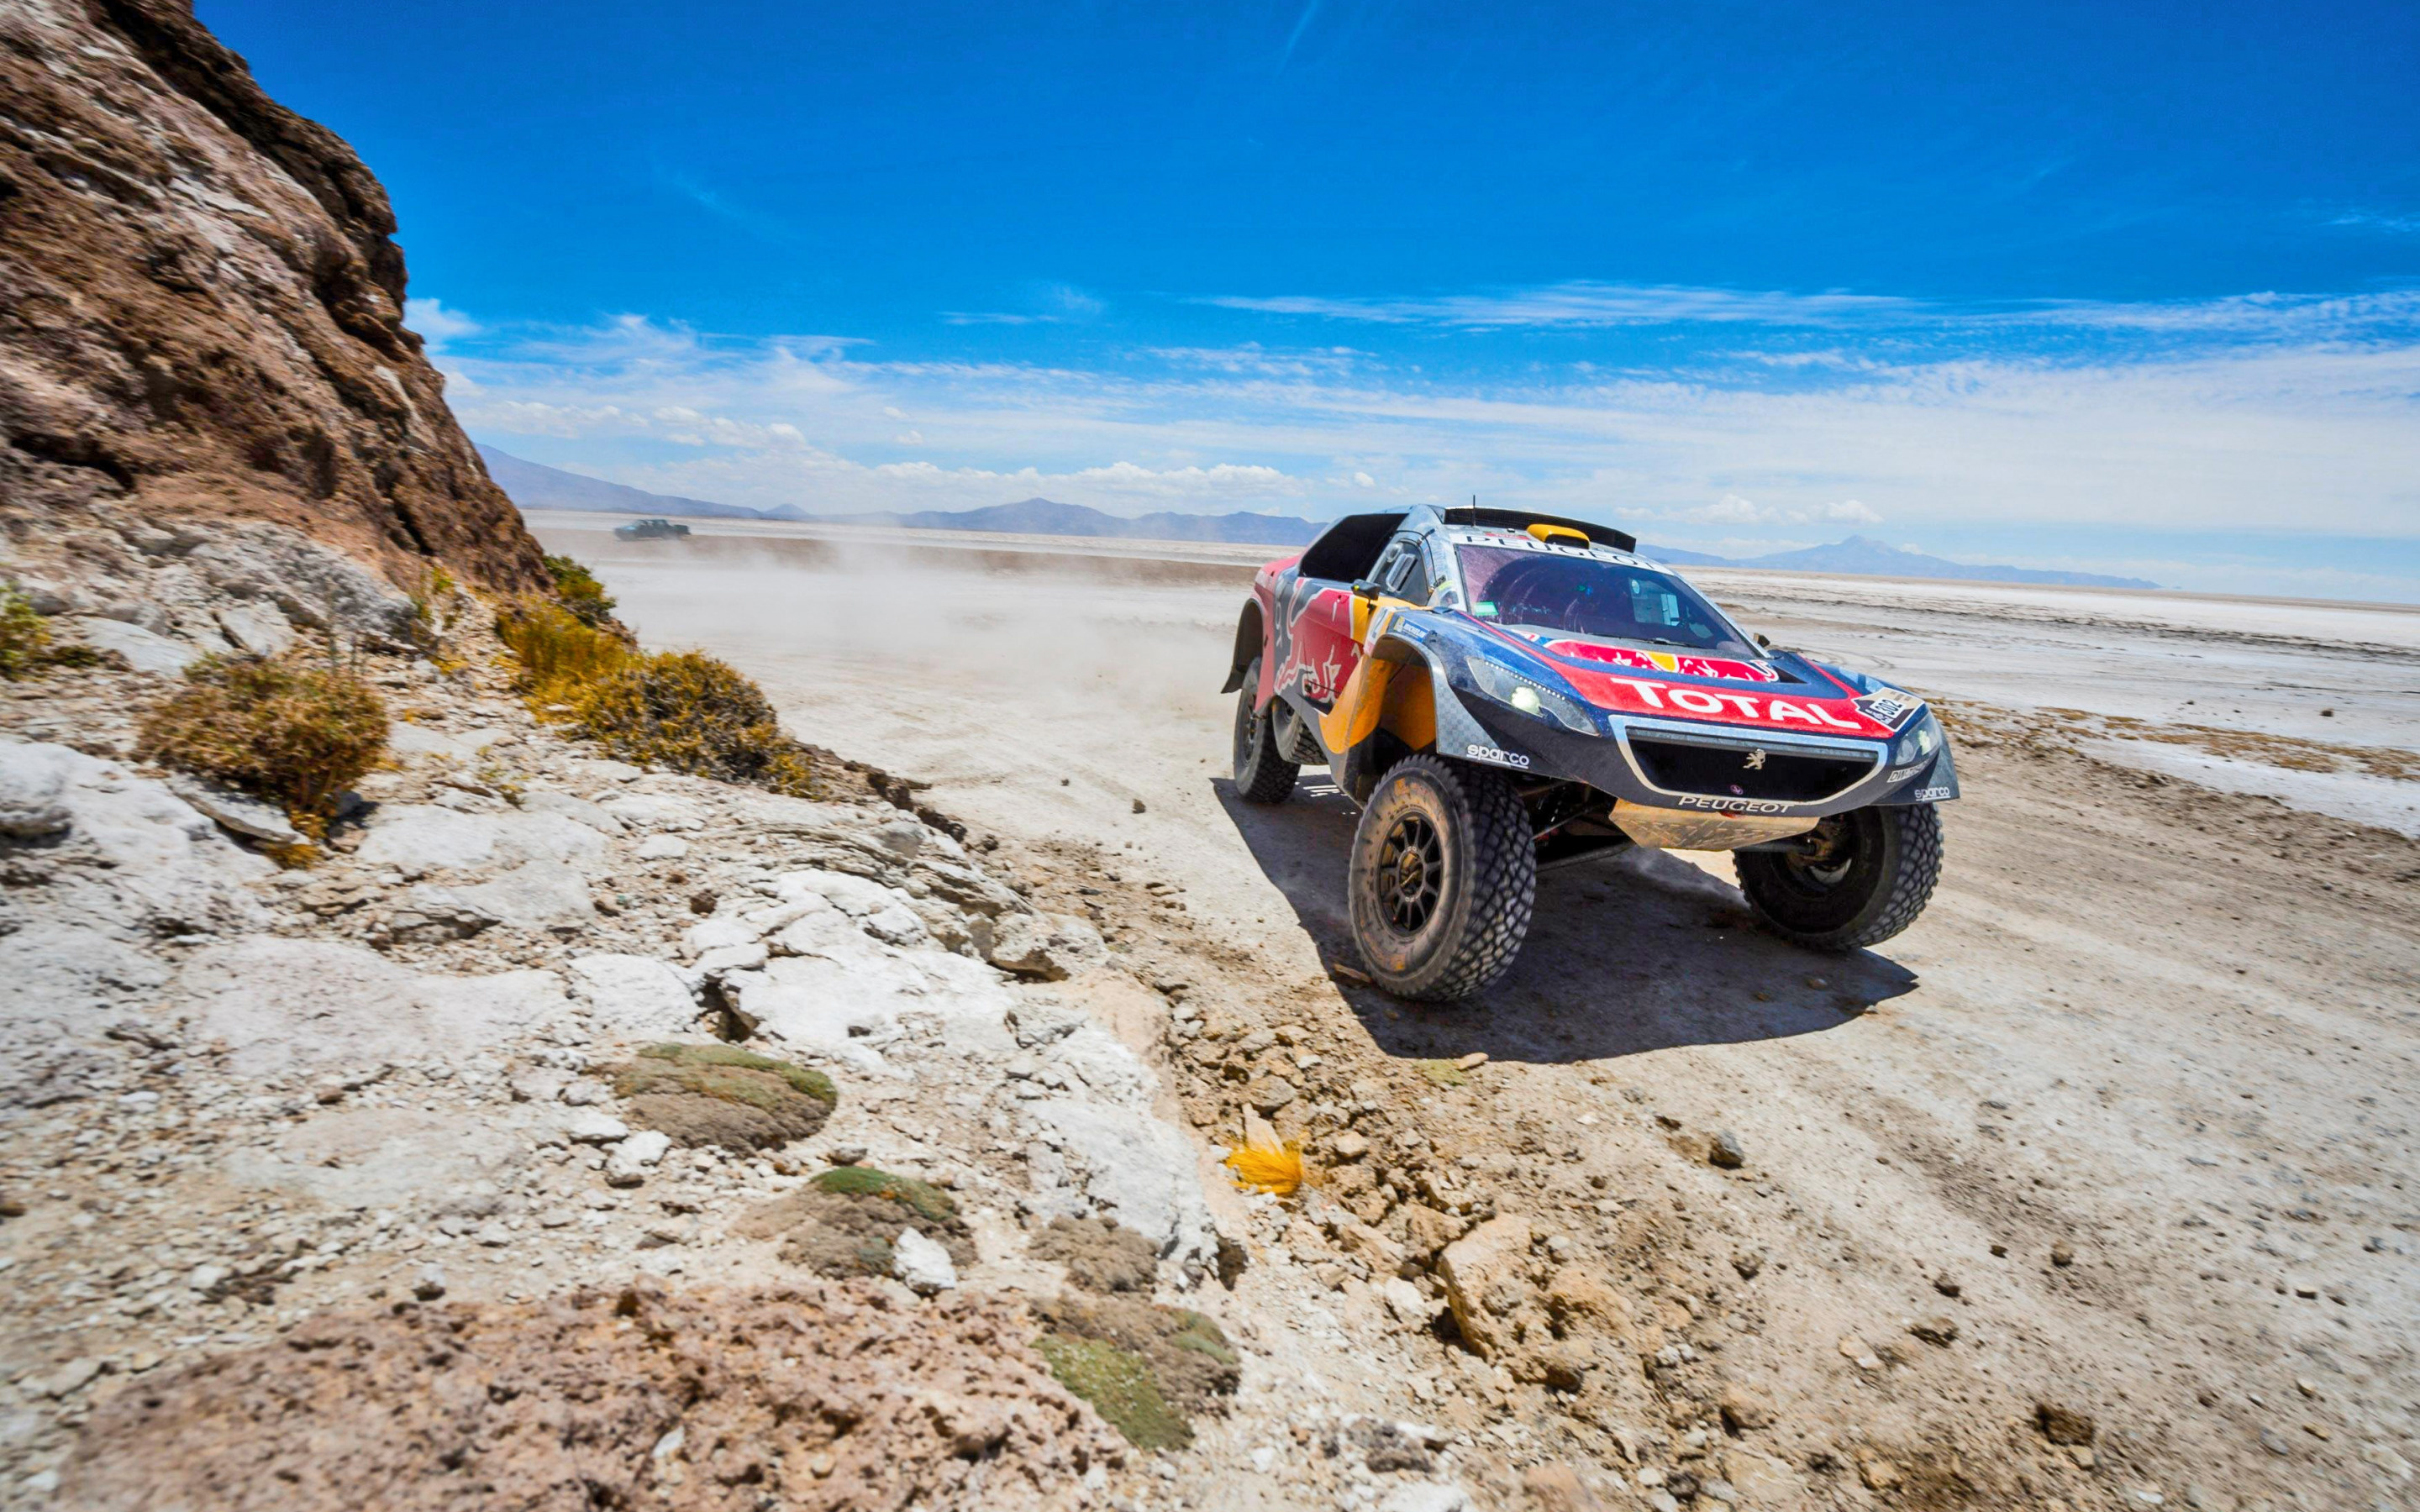 Dakar Rally: 2016 Dakar, The tough conditions, Peugeot, Travelling over difficult terrain. 2880x1800 HD Wallpaper.